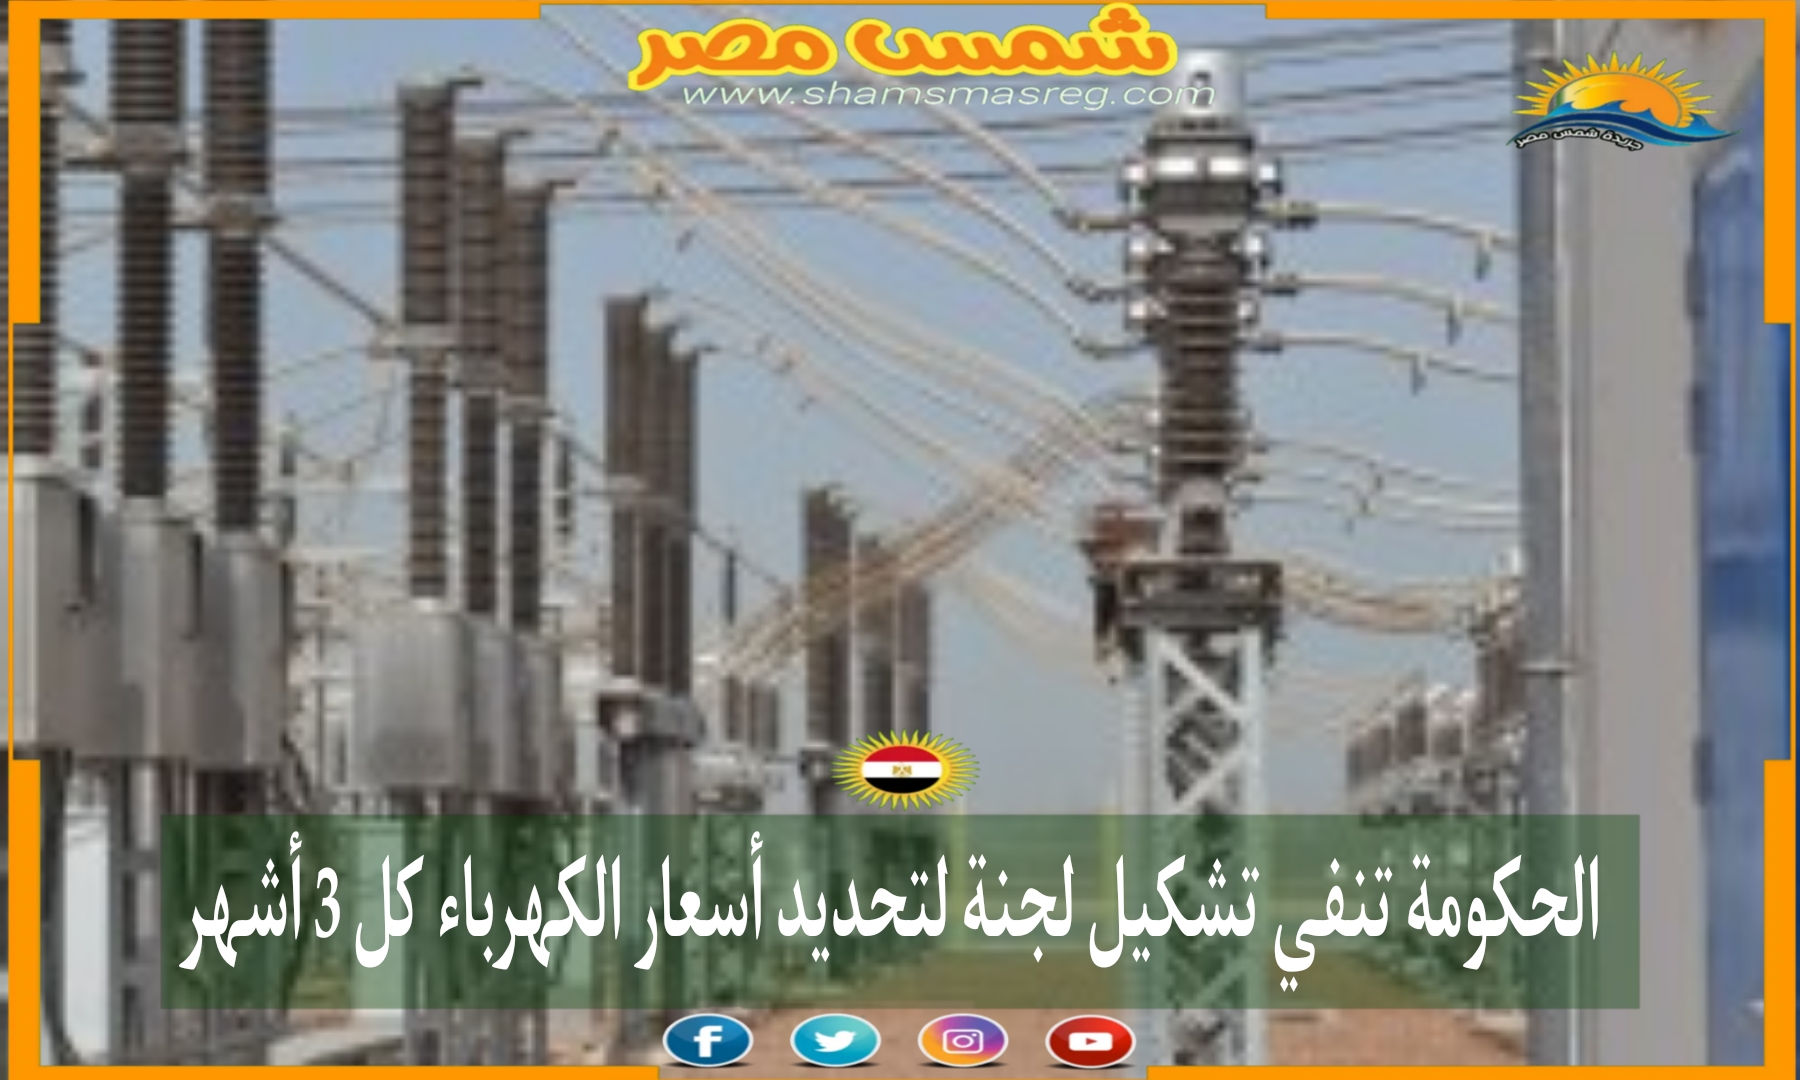 الحكومة تنفي تشكيل لجنة لتحديد أسعار الكهرباء كل 3 أشهر